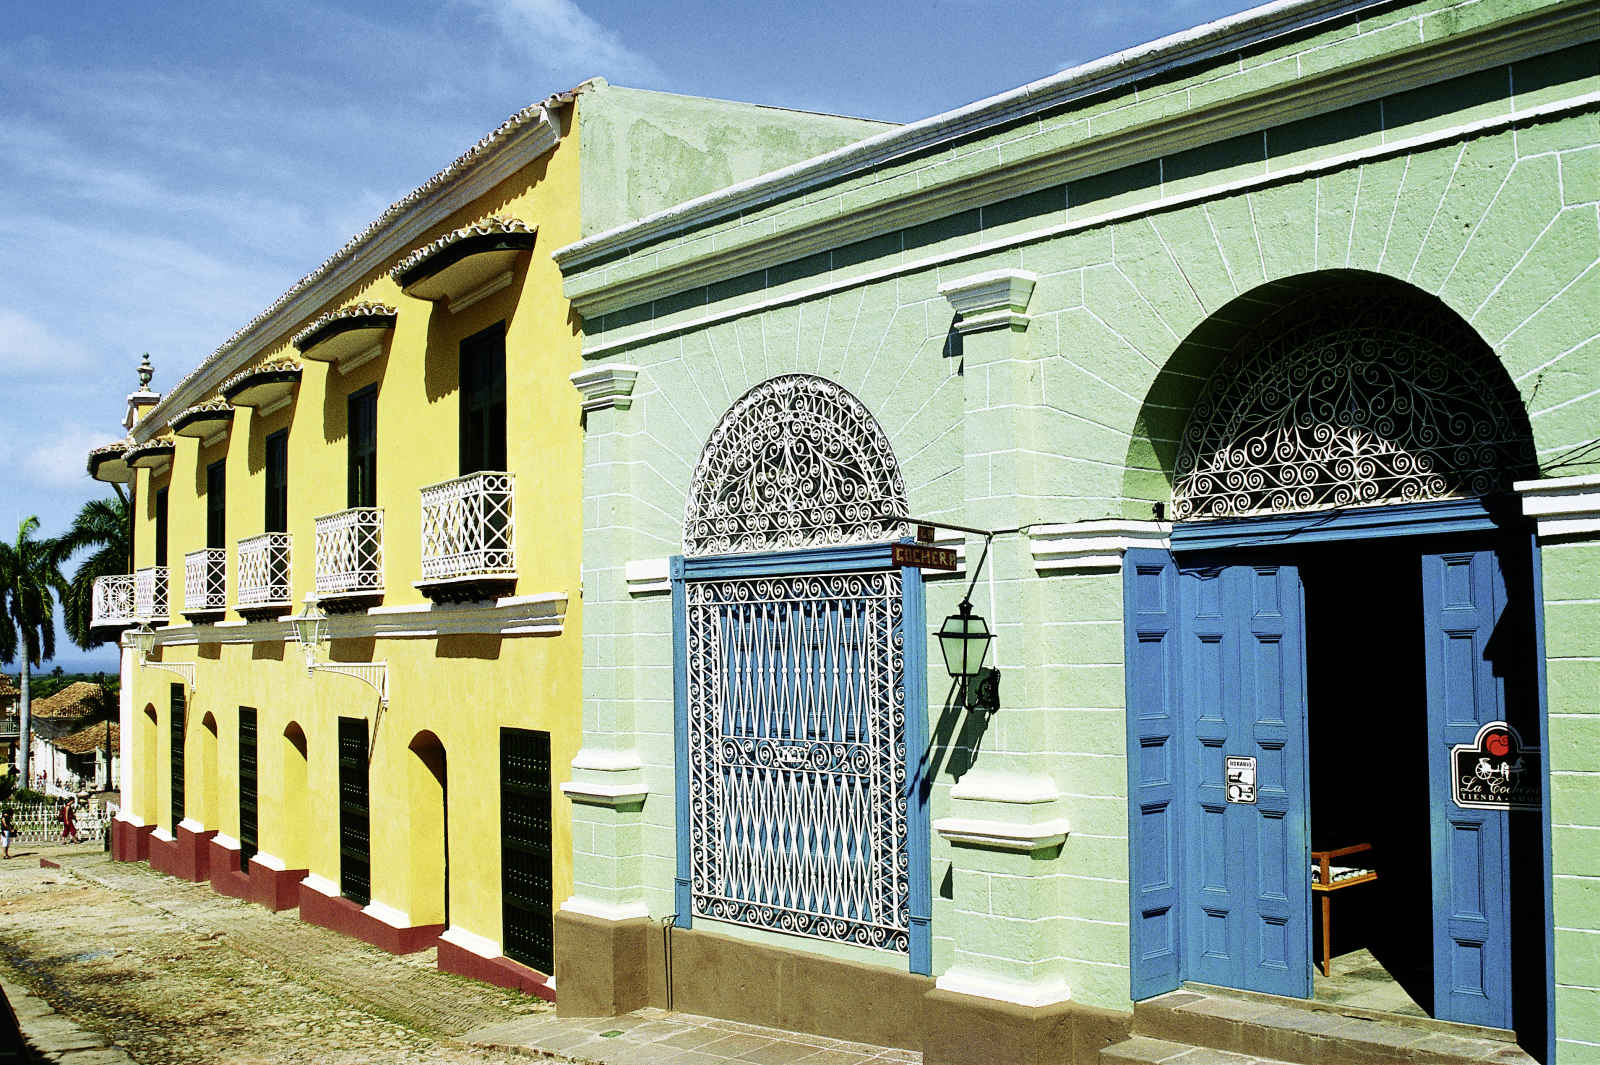 Rues de Trinidad, Cuba